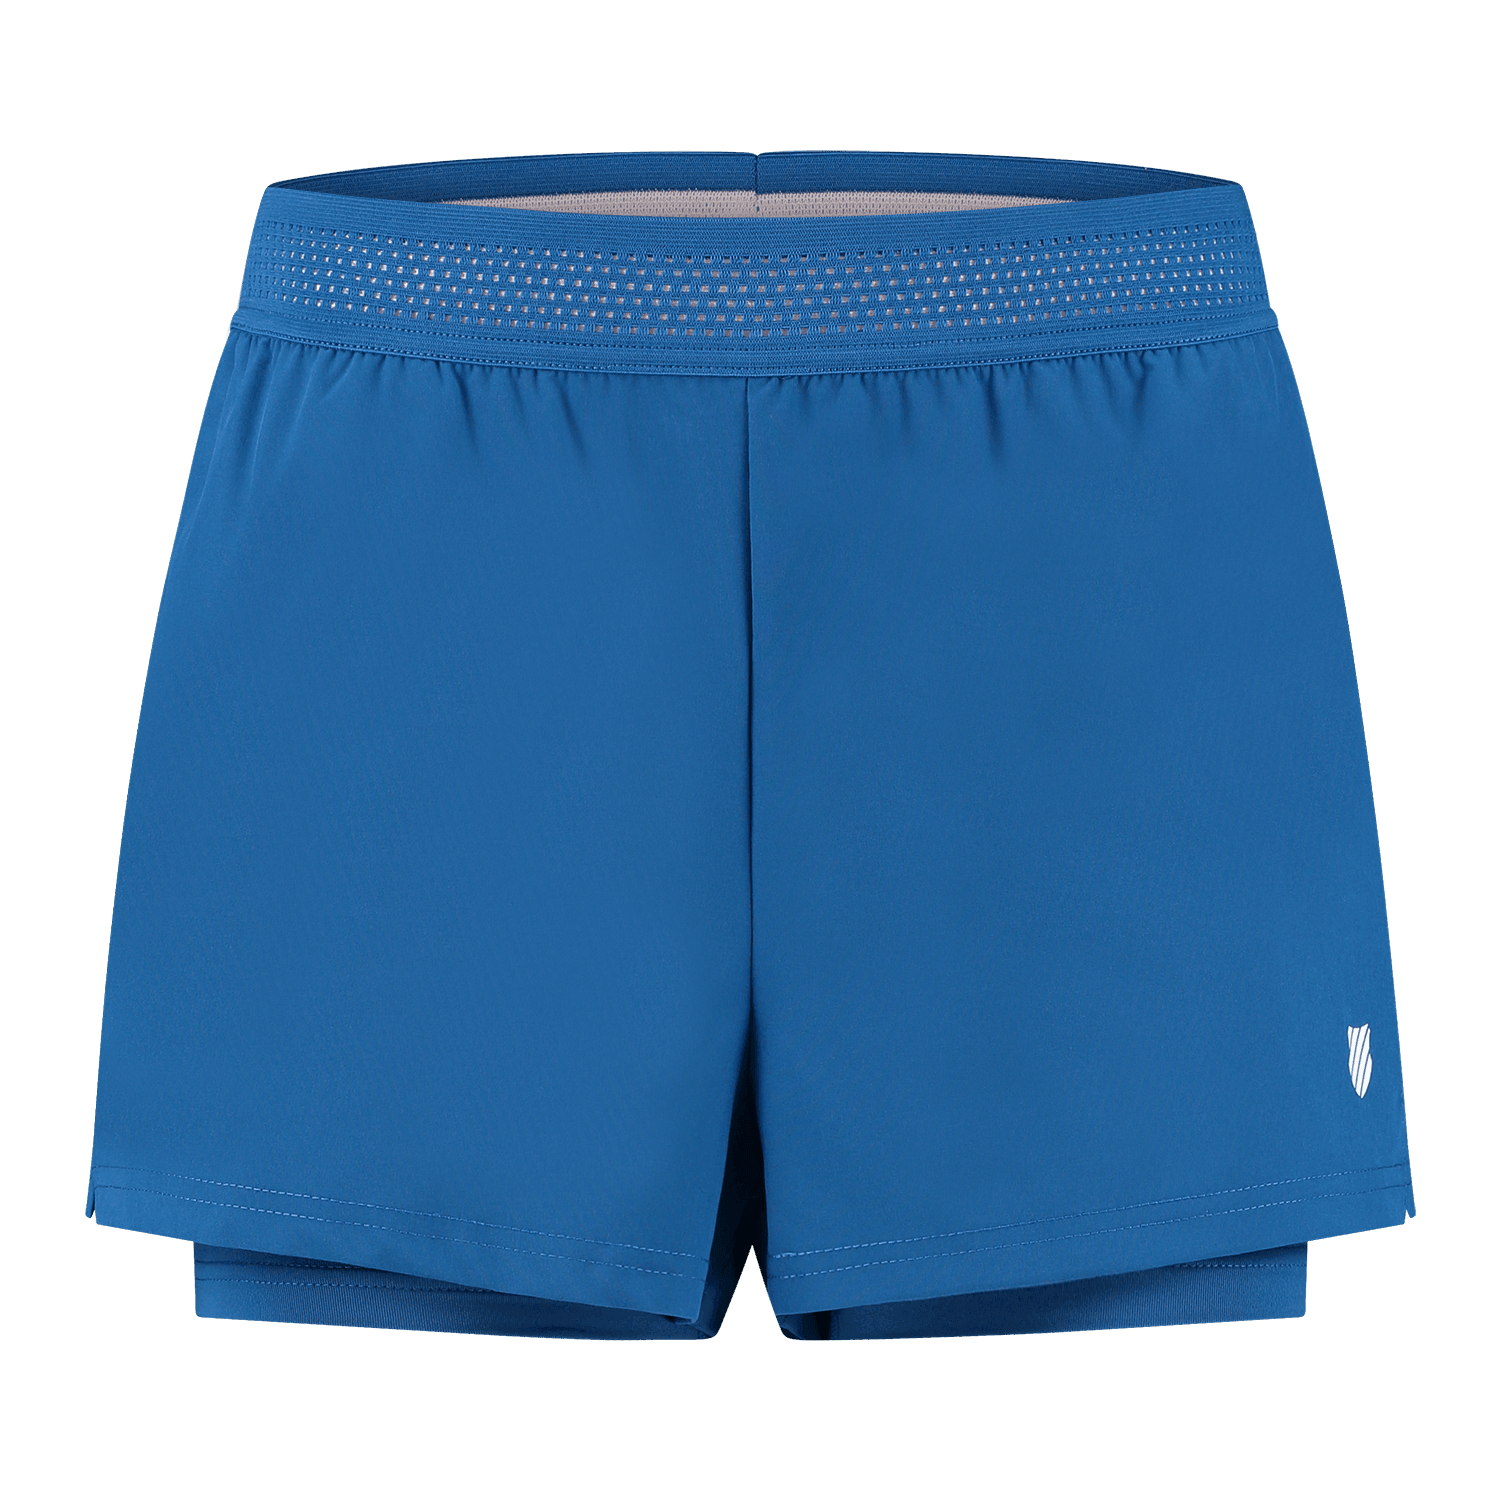 K-Swiss Womens Hypercourt Shorts - Classic Blue - Bassline Retail